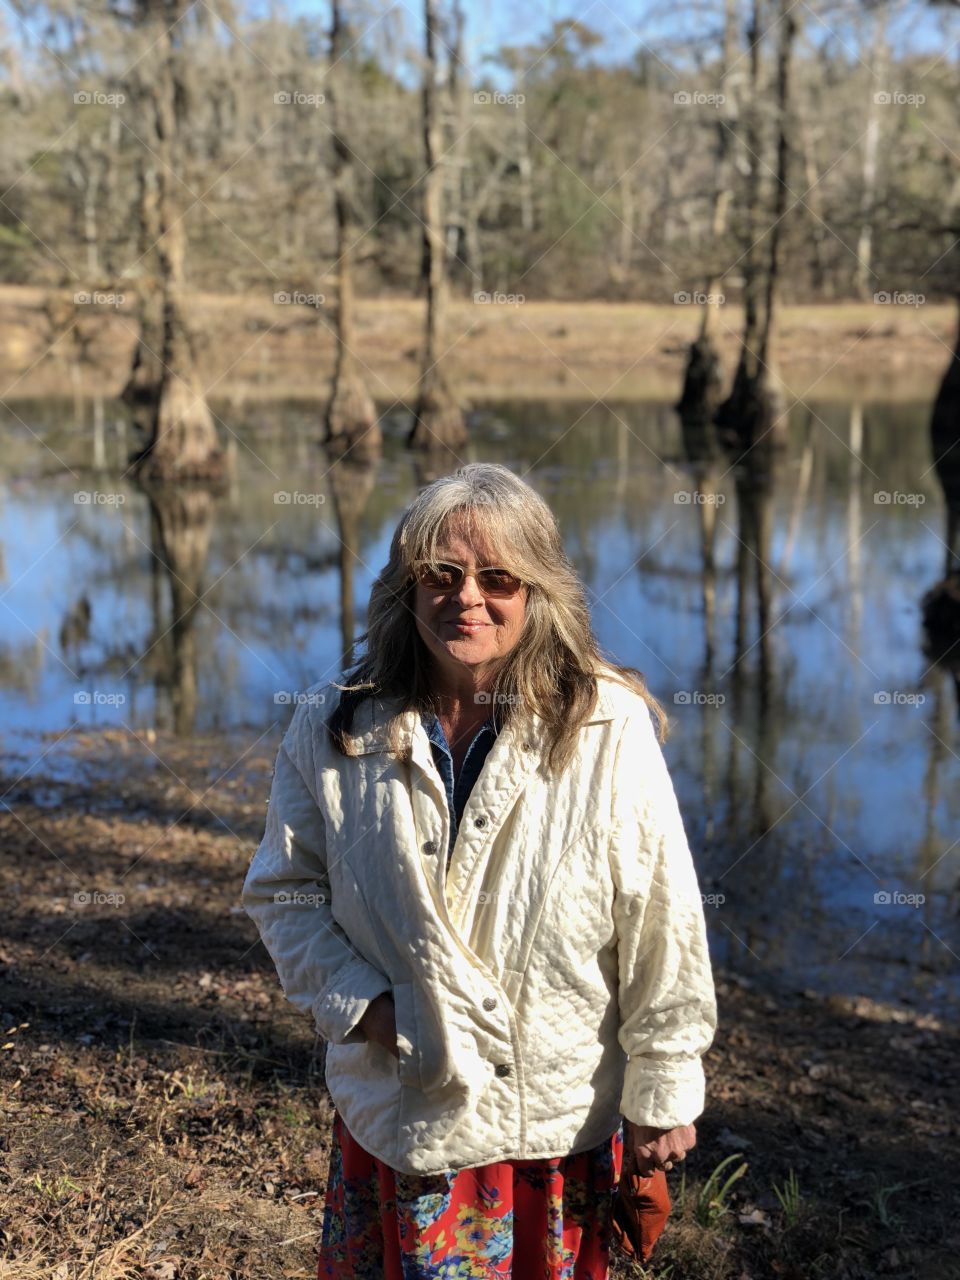 Mom By the pond